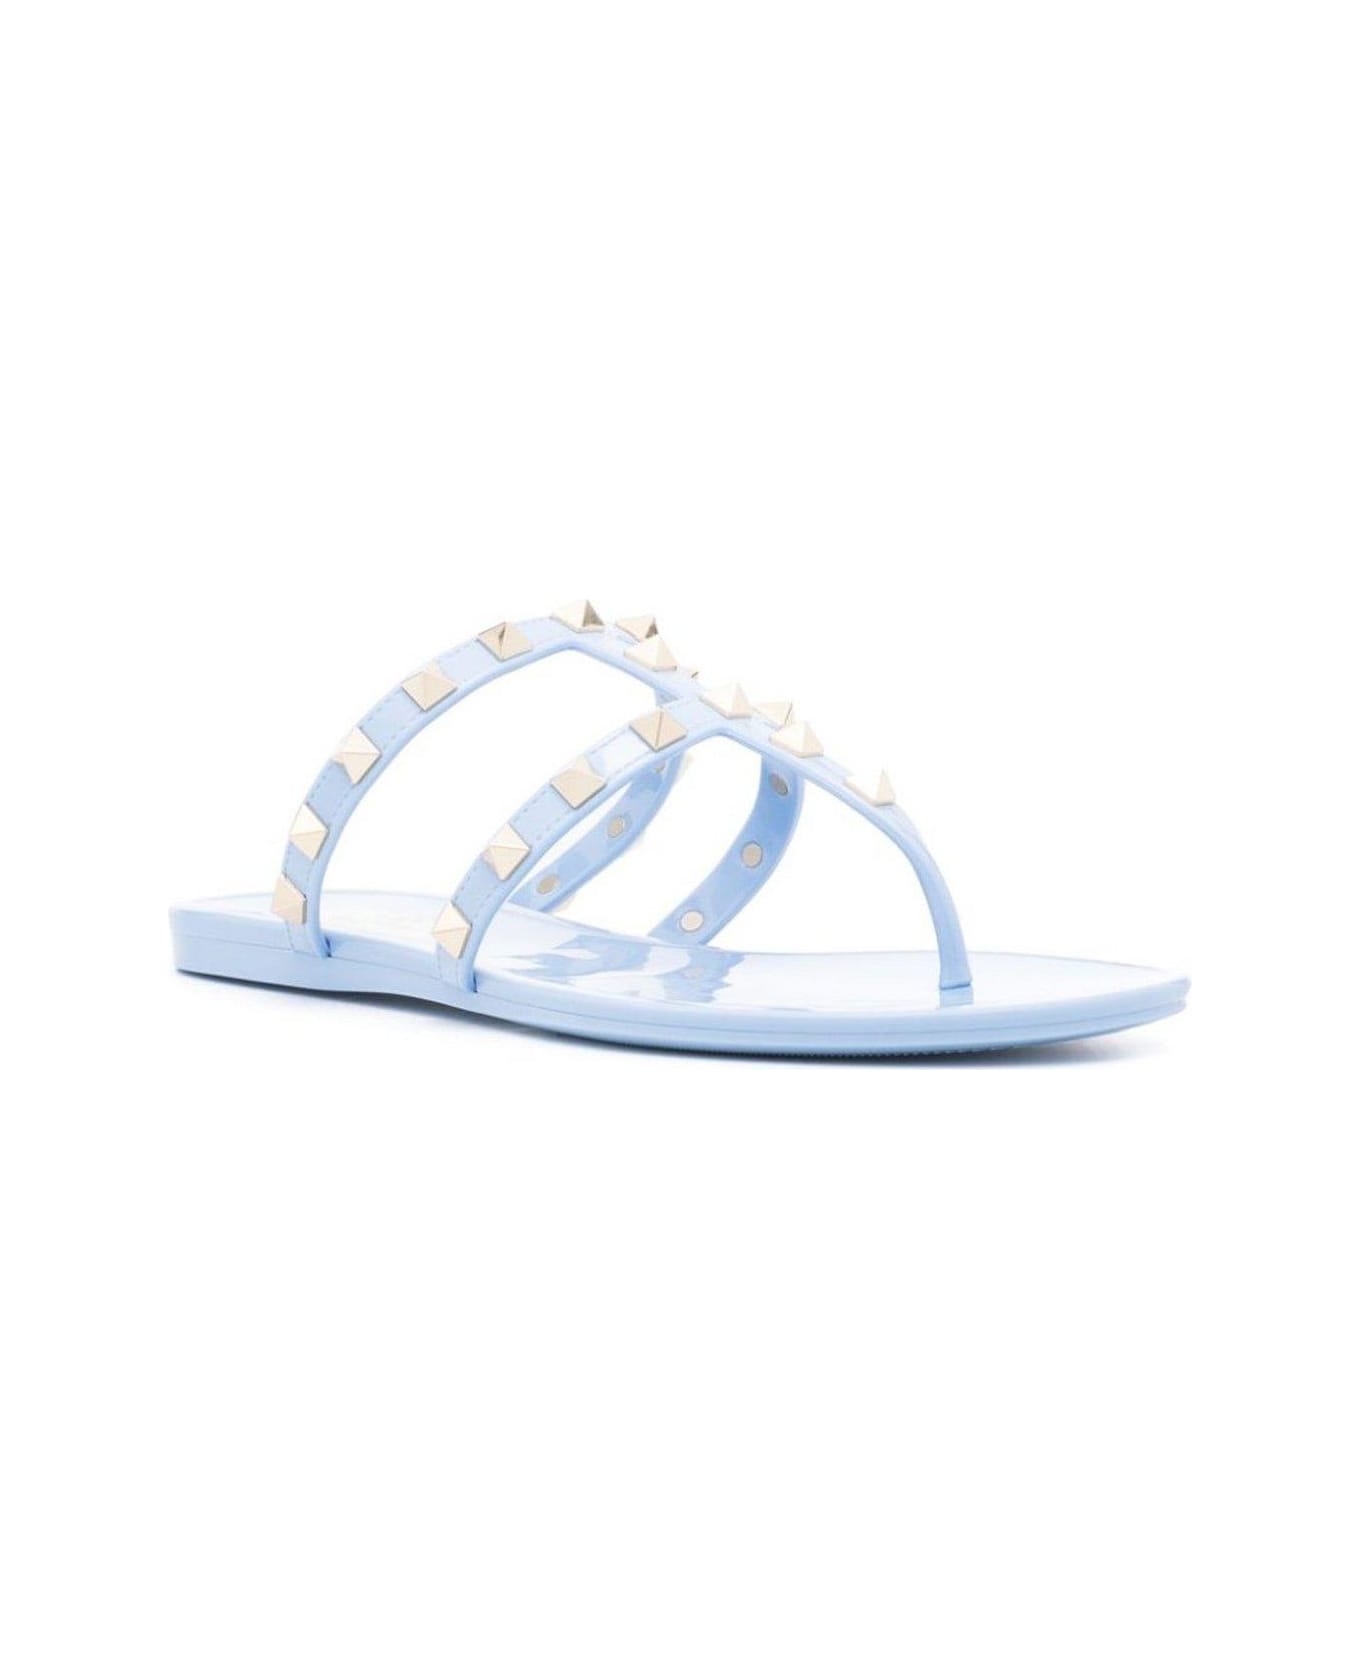 Valentino Garavani Garavani Rockstud Open Toe Flat Sandals - Clear Blue